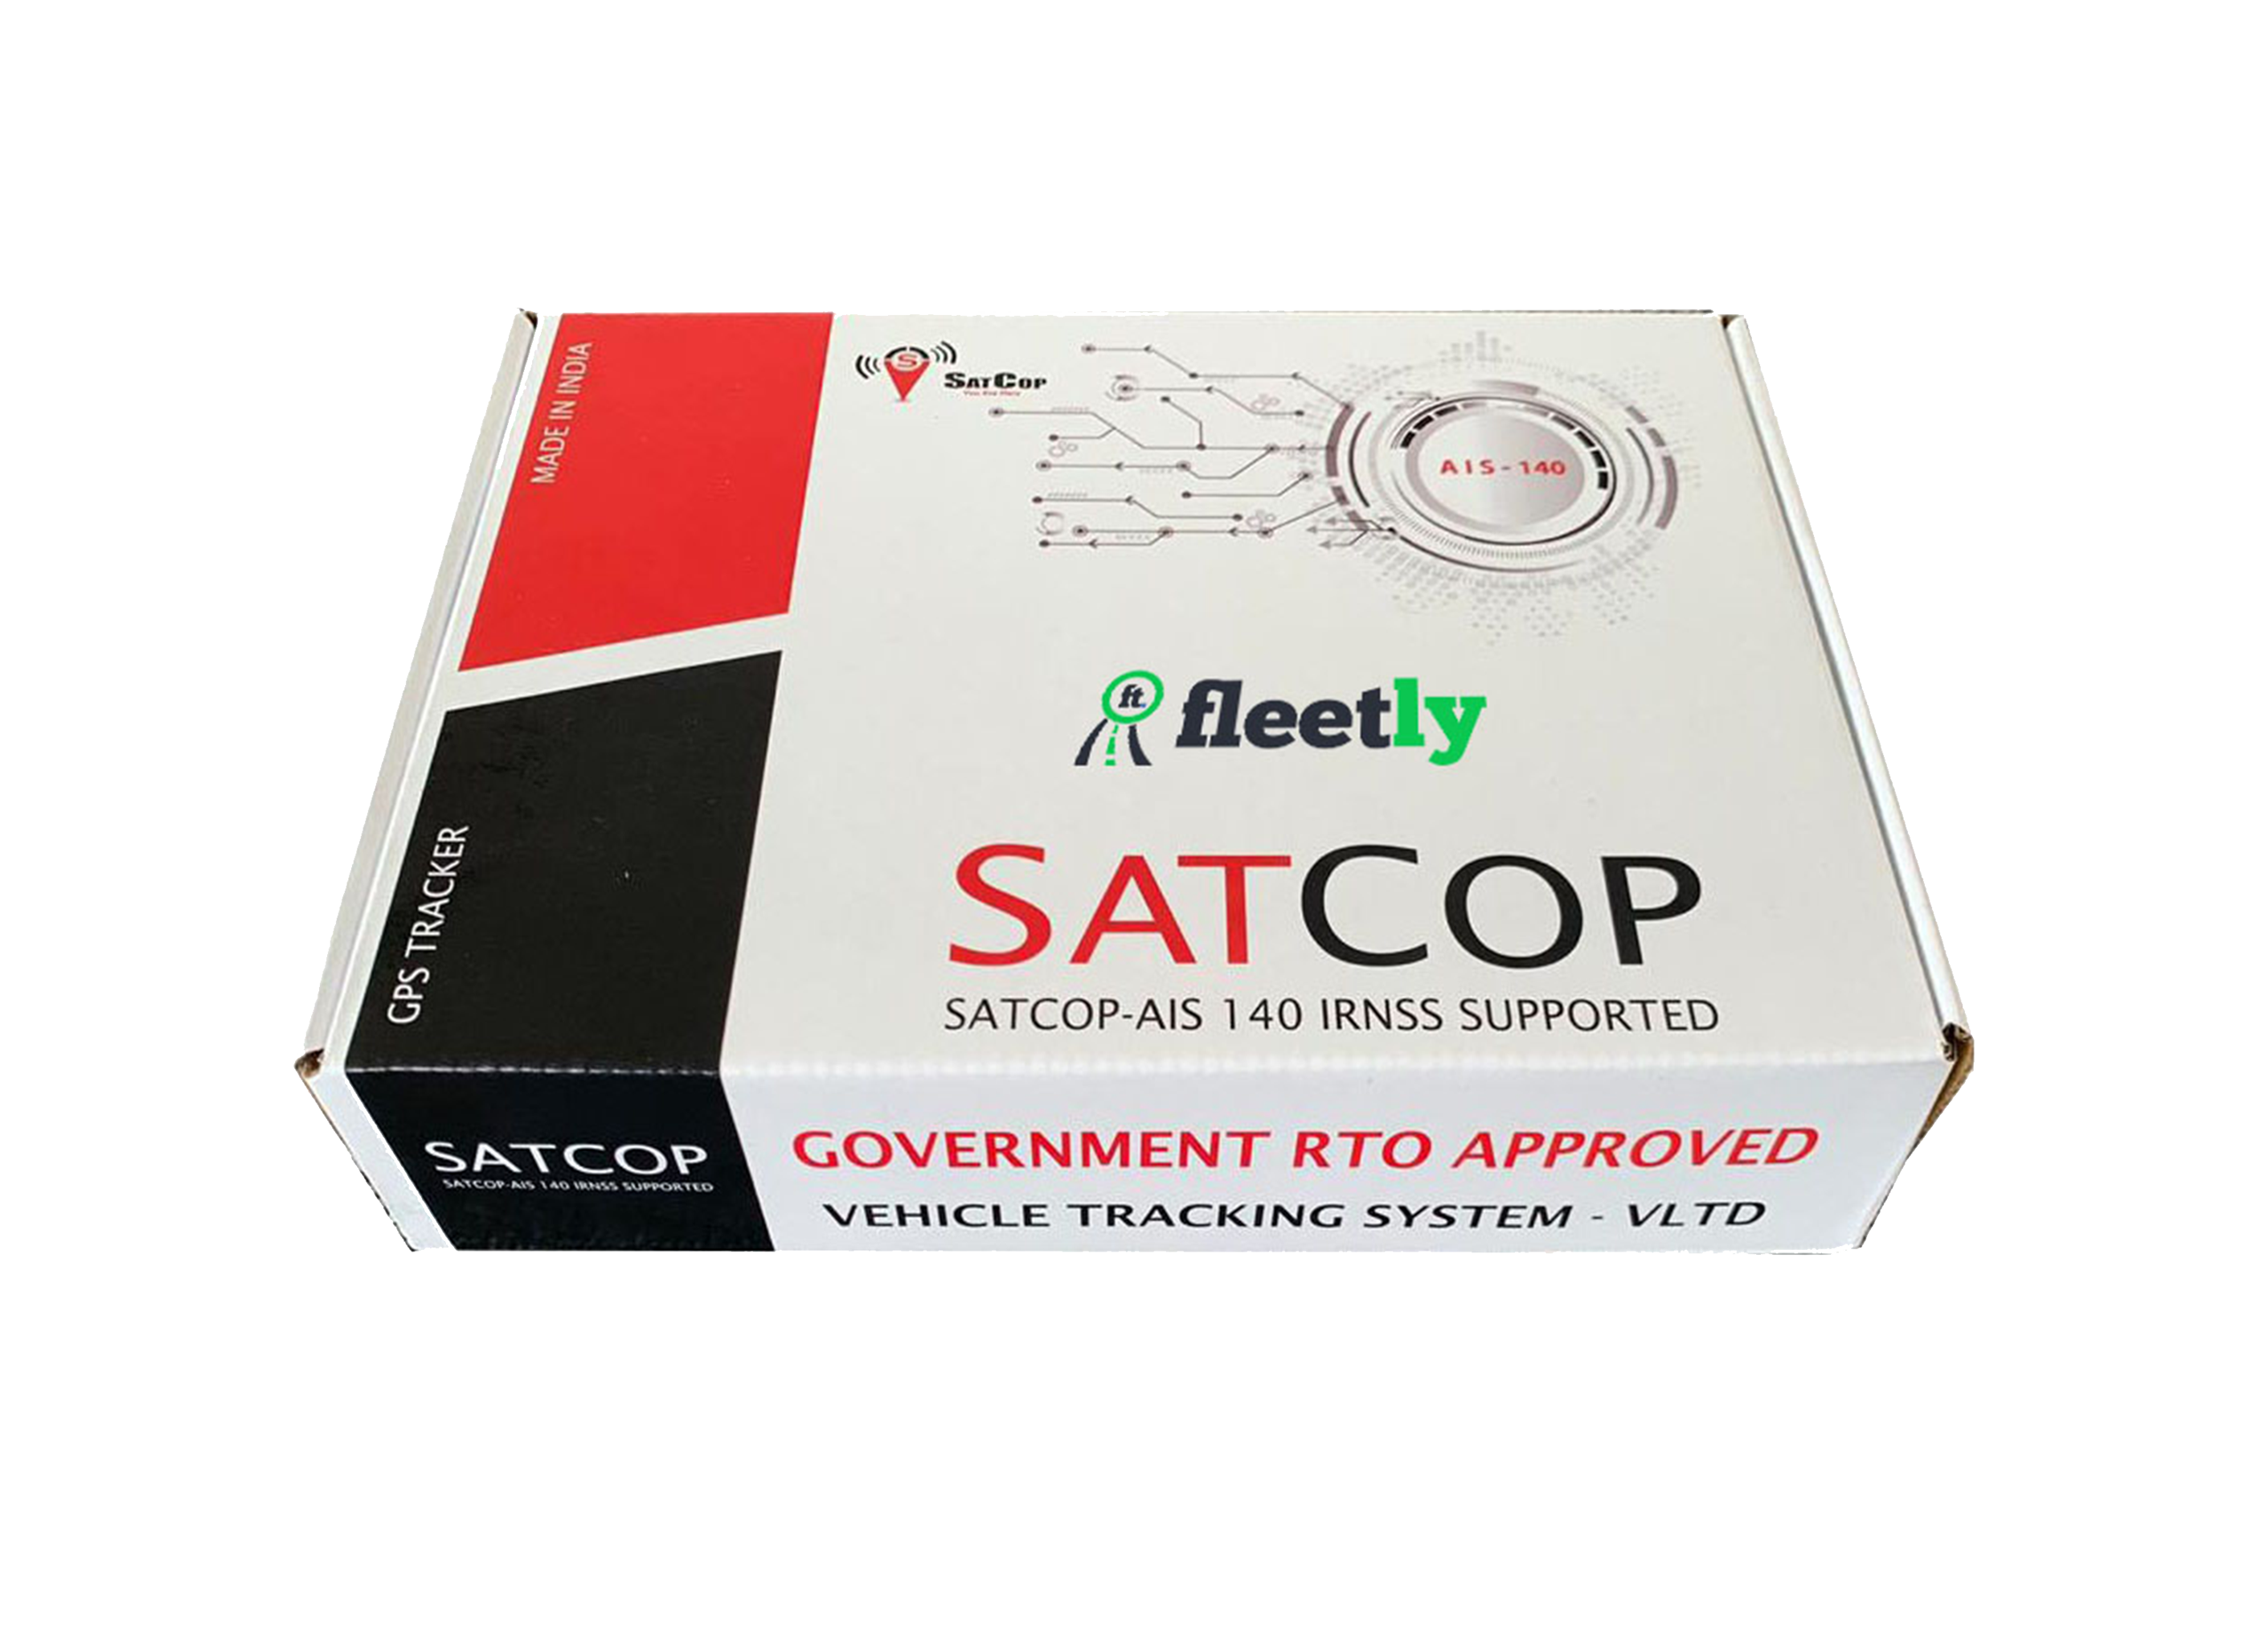 Satcop AIS 140 device is best Gps tracker